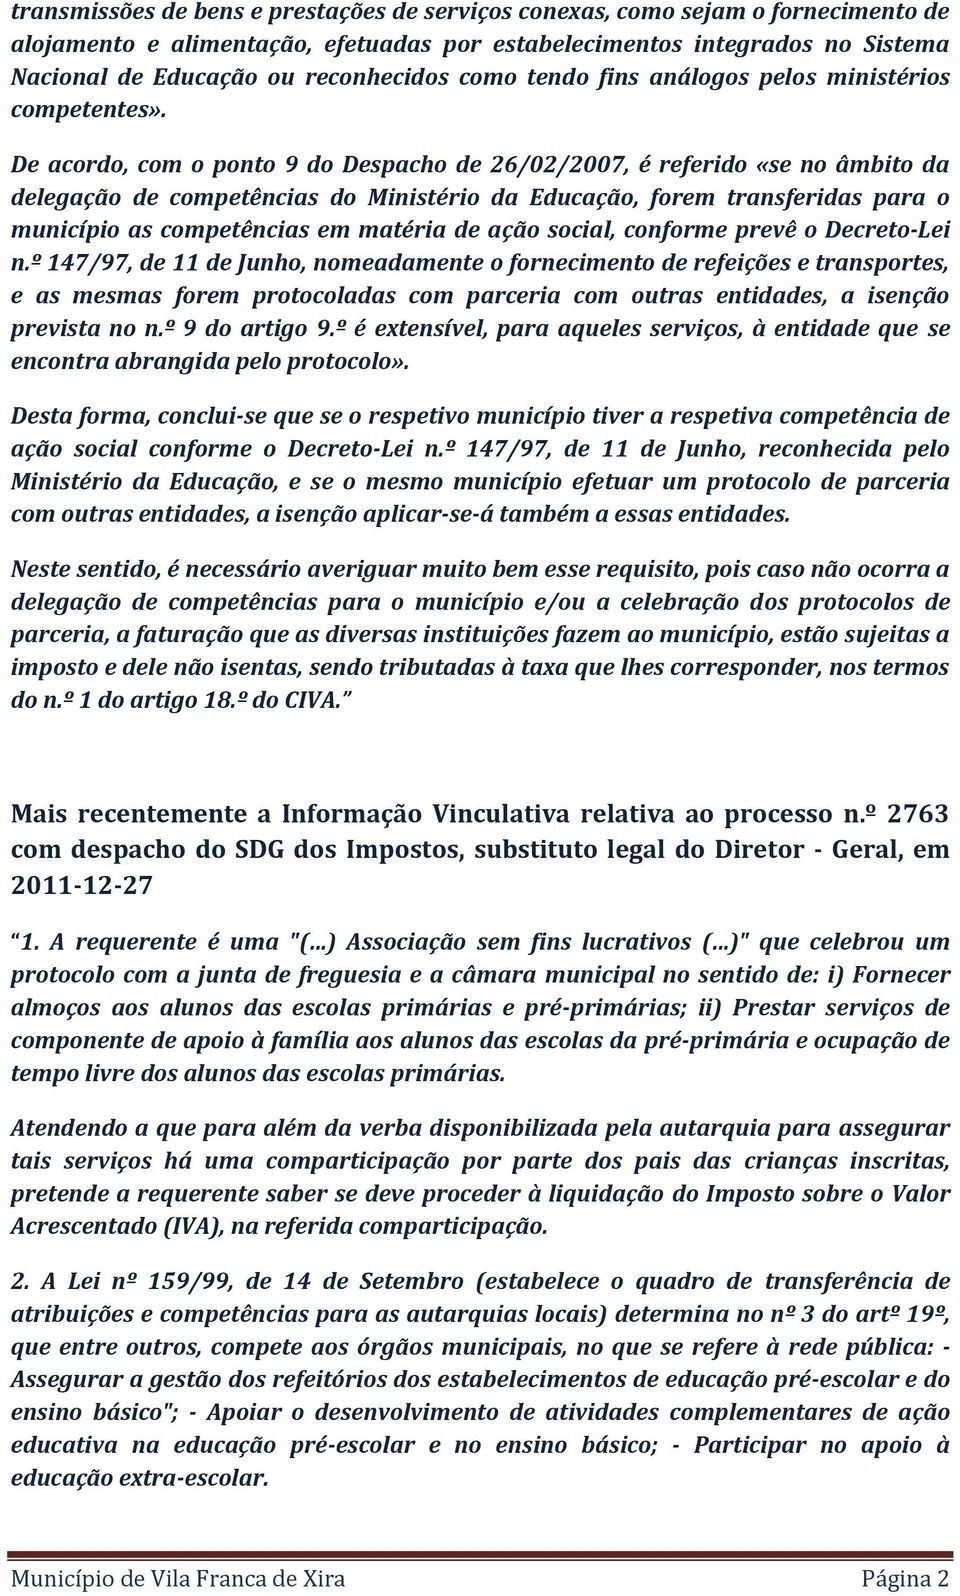 De acordo, com o ponto 9 do Despacho de 26/02/2007, é referido «se no âmbito da delegação de competências do Ministério da Educação, forem transferidas para o município as competências em matéria de